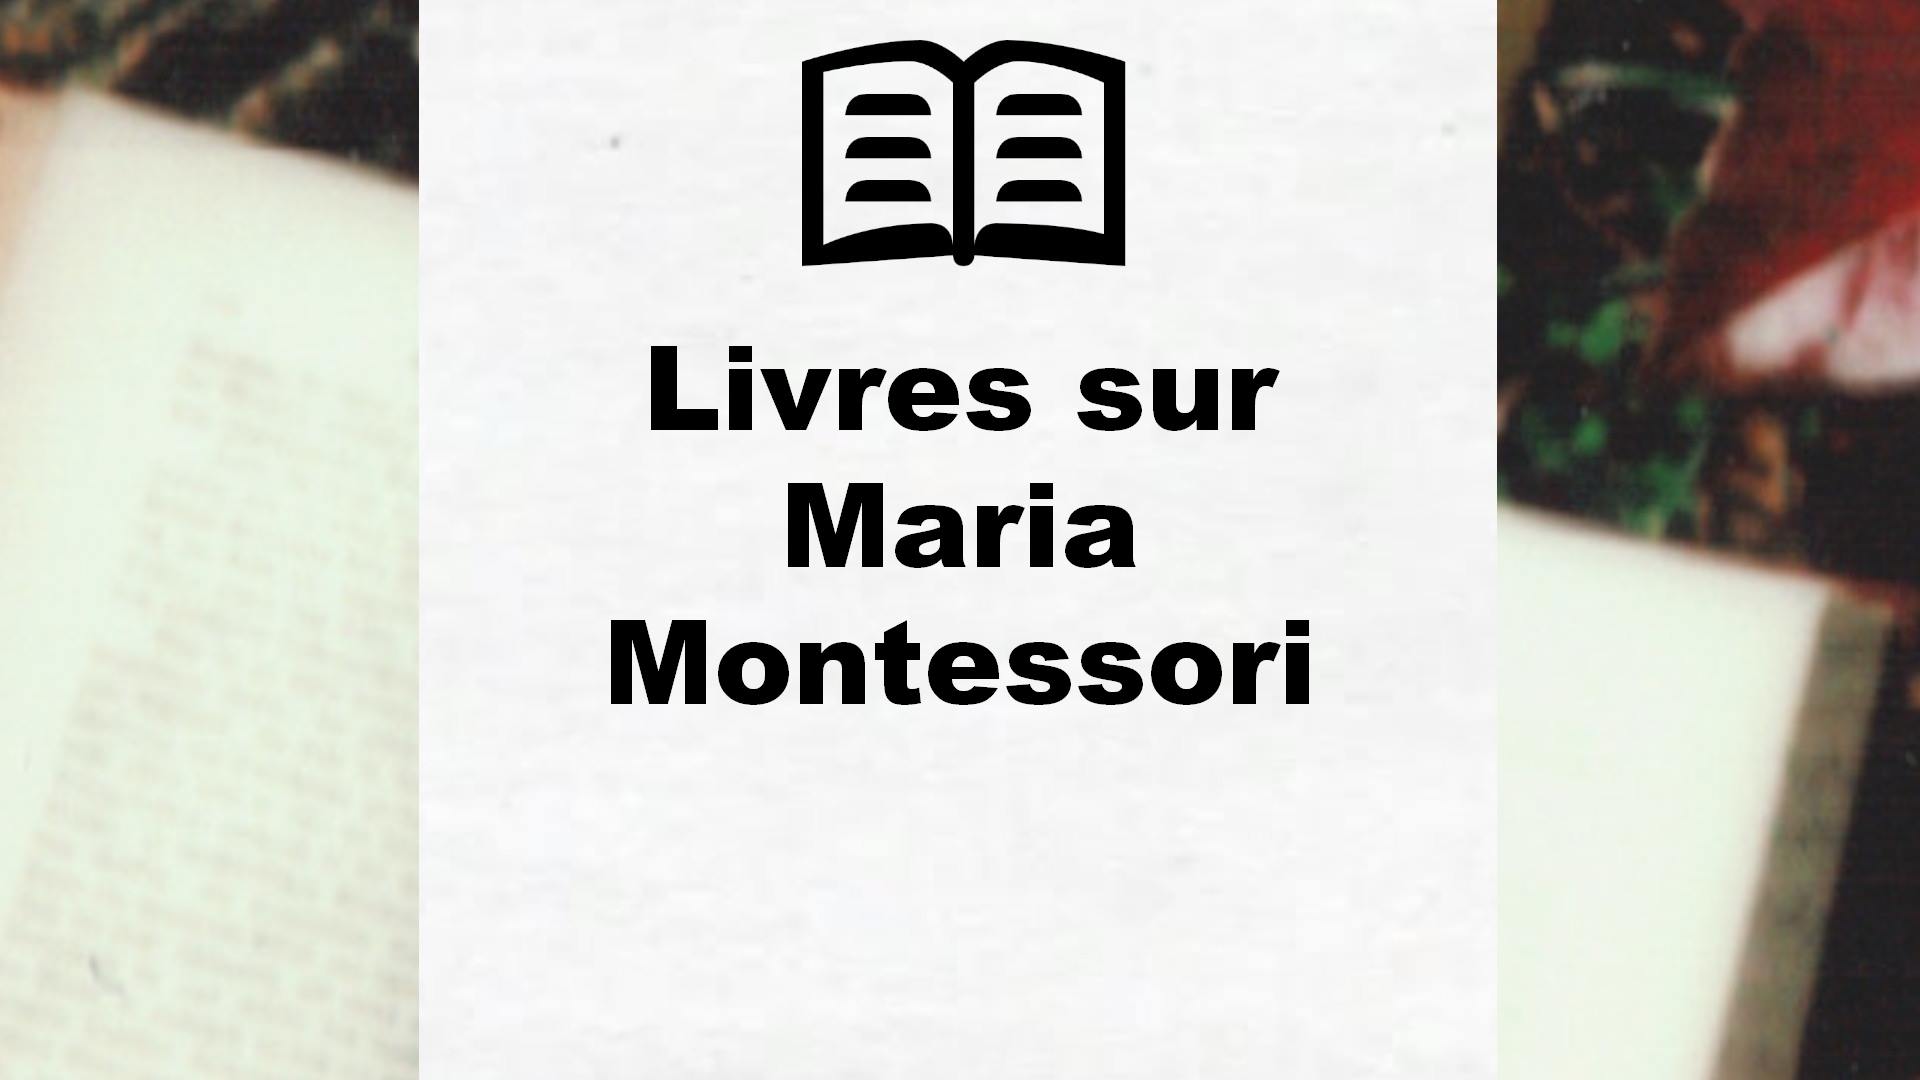 Livres sur Maria Montessori